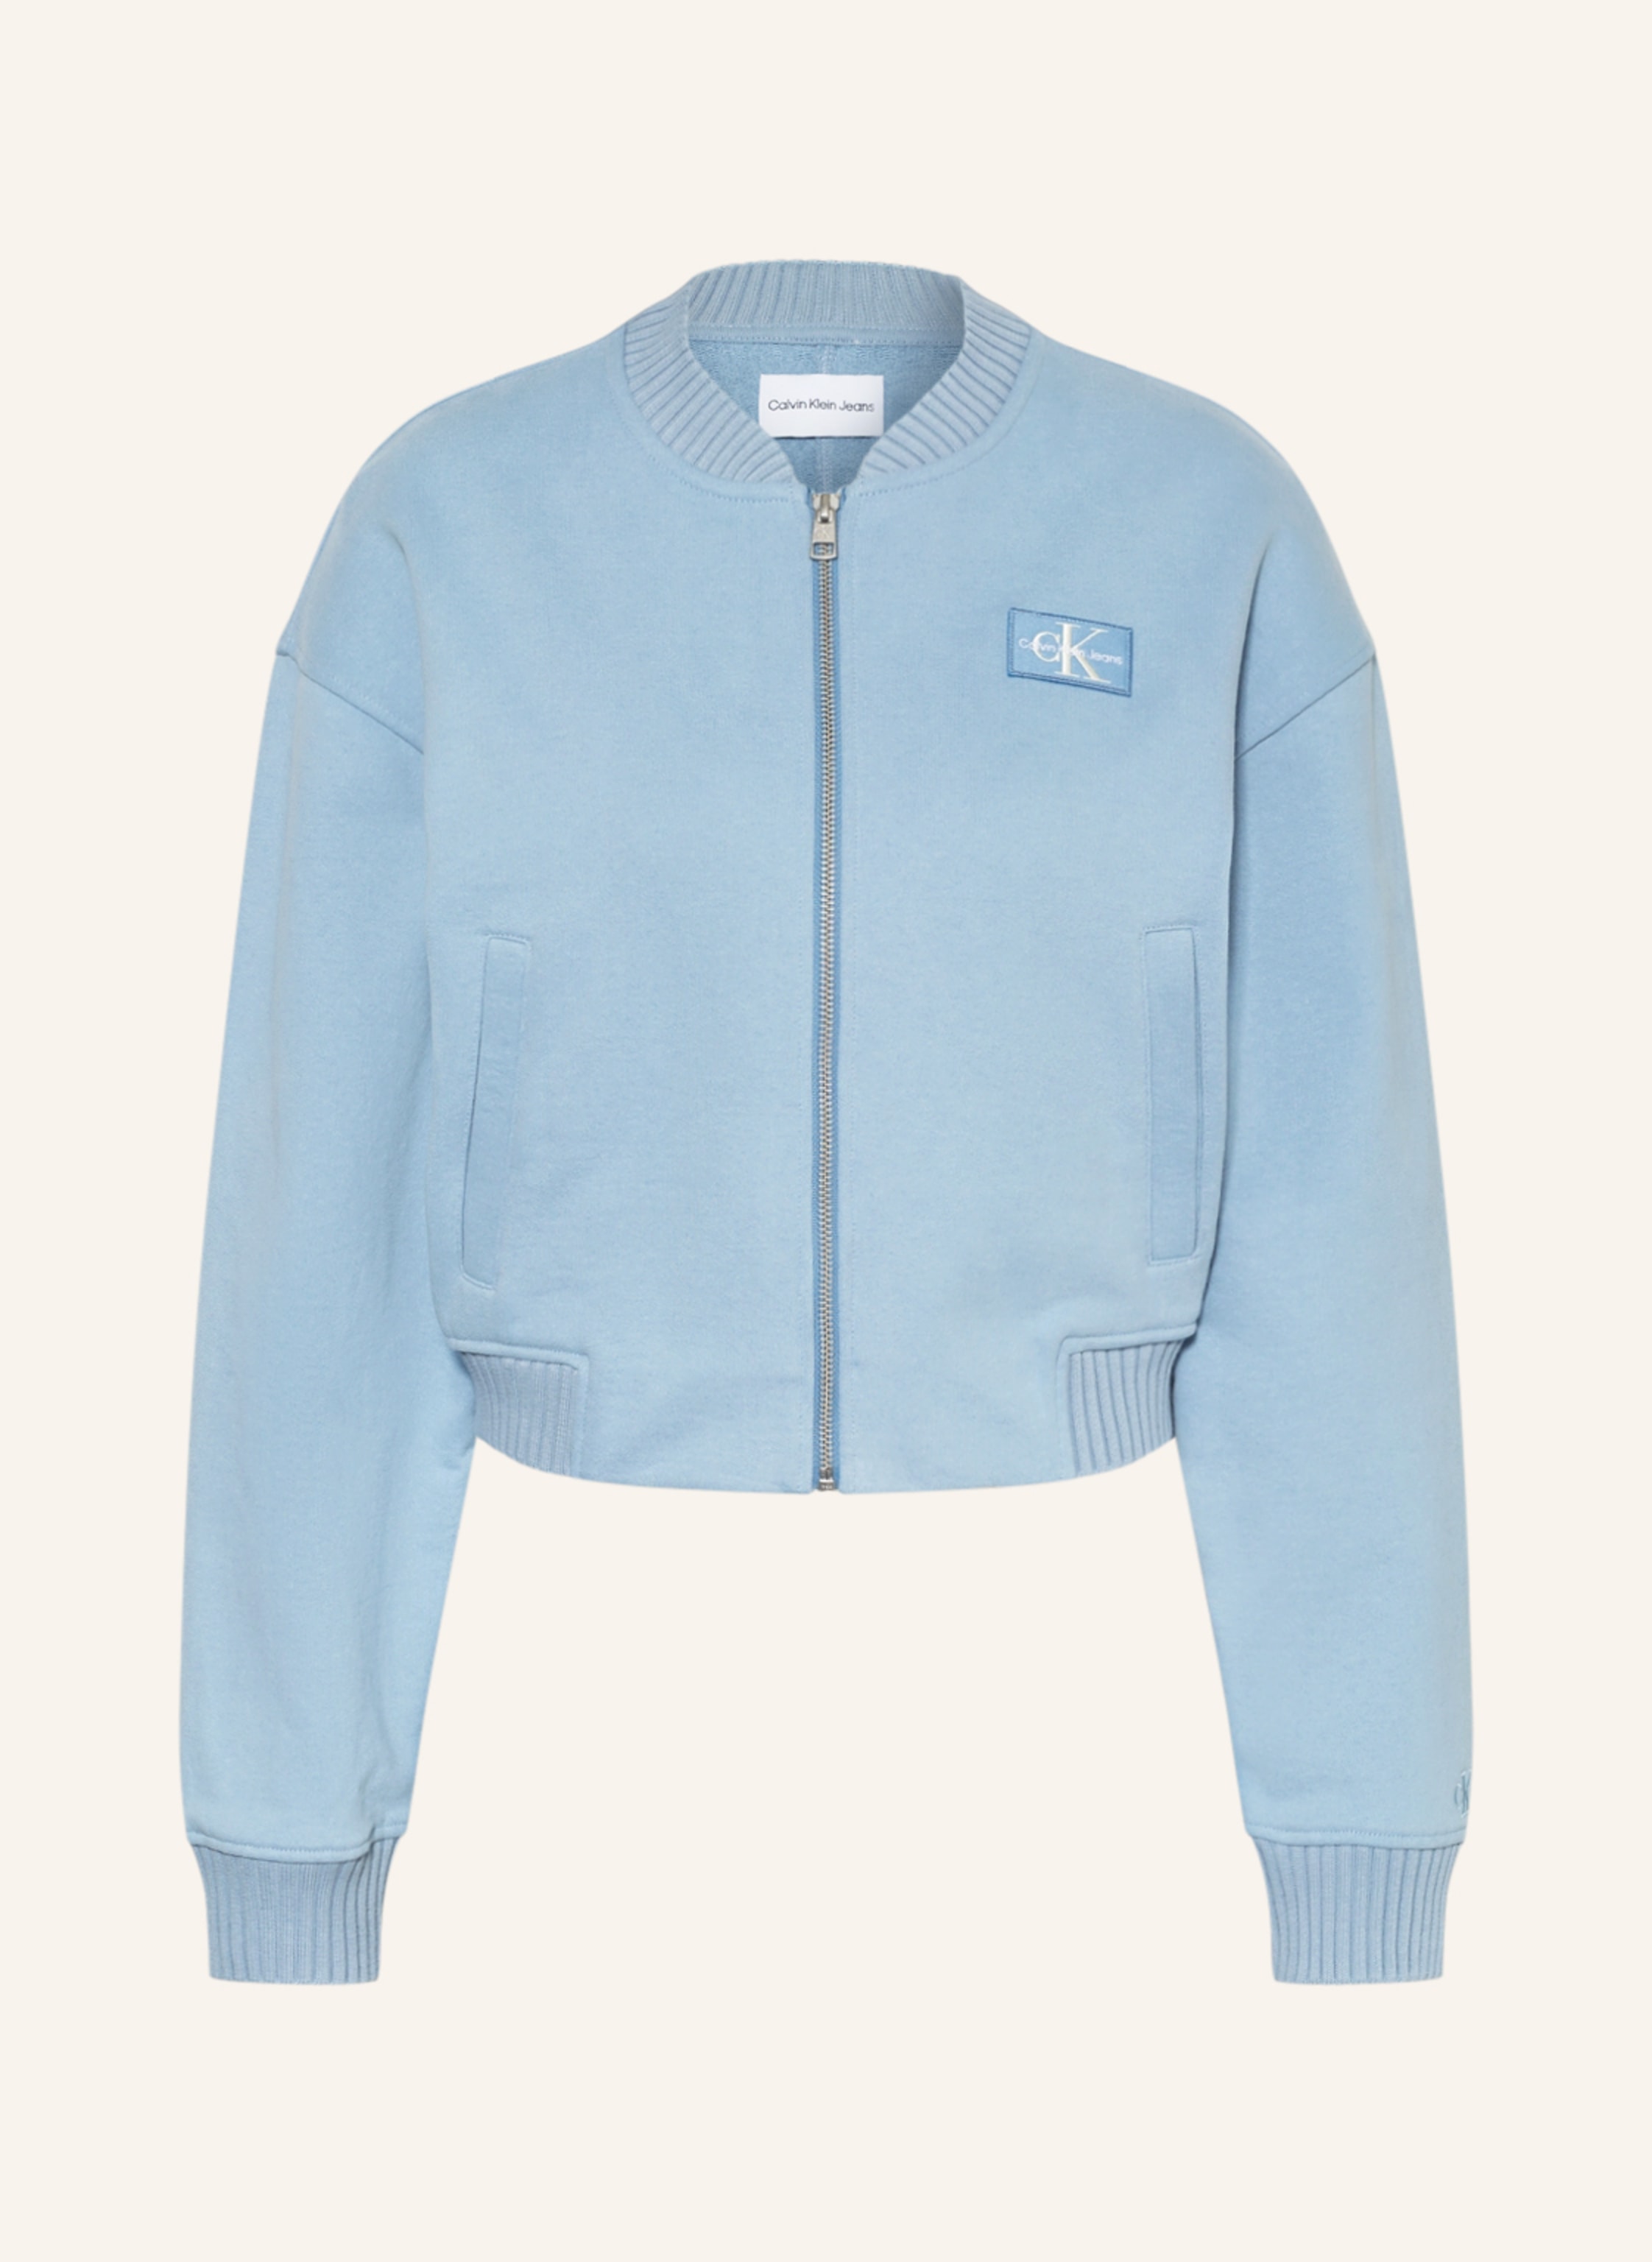 Calvin Klein Jeans Bomber jacket in light blue | Breuninger